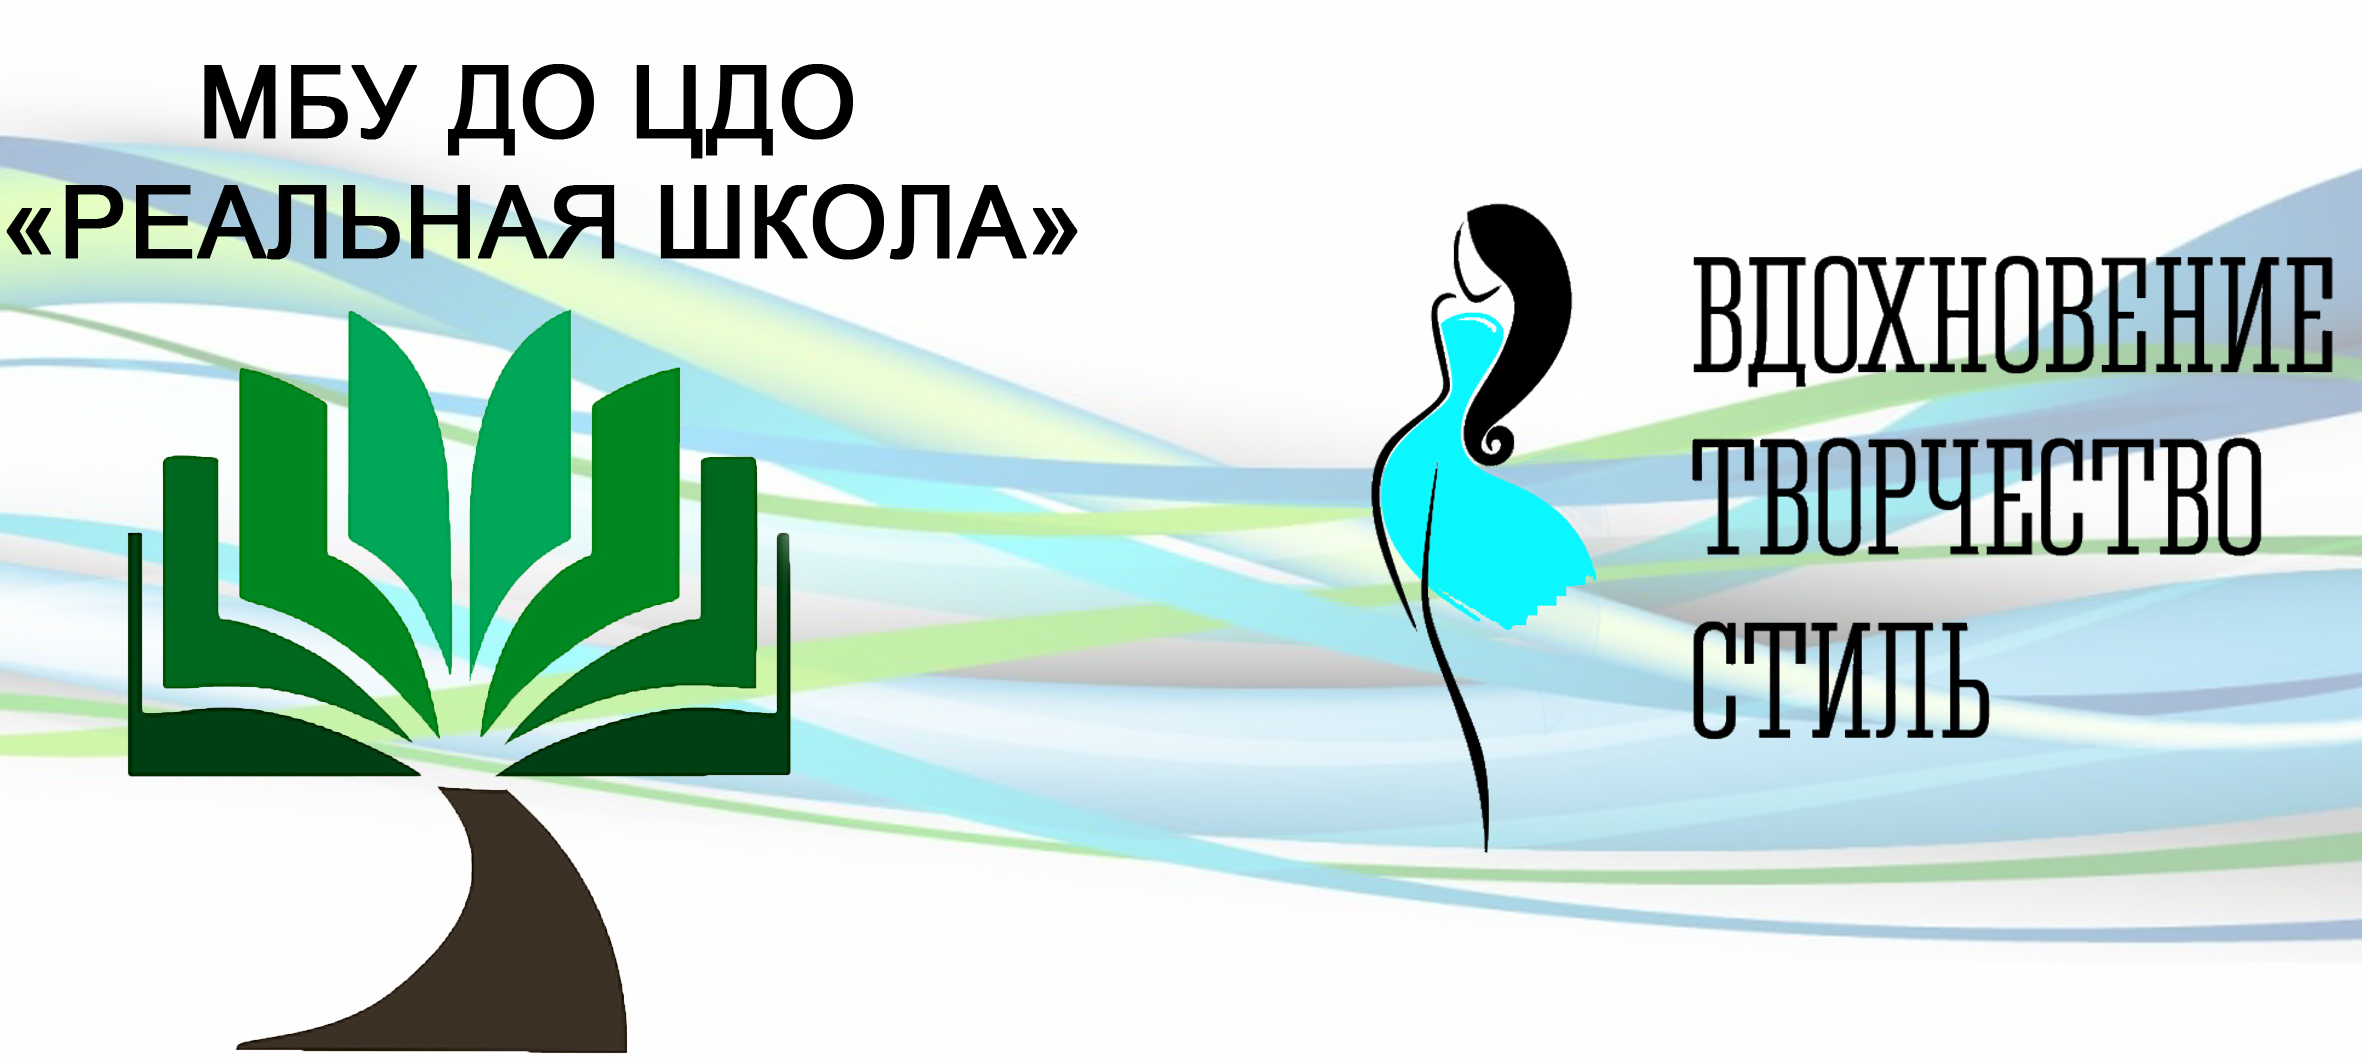 В Воронеже пройдет городской фестиваль художественного творчества «Вдохновение. Творчество. Стиль»